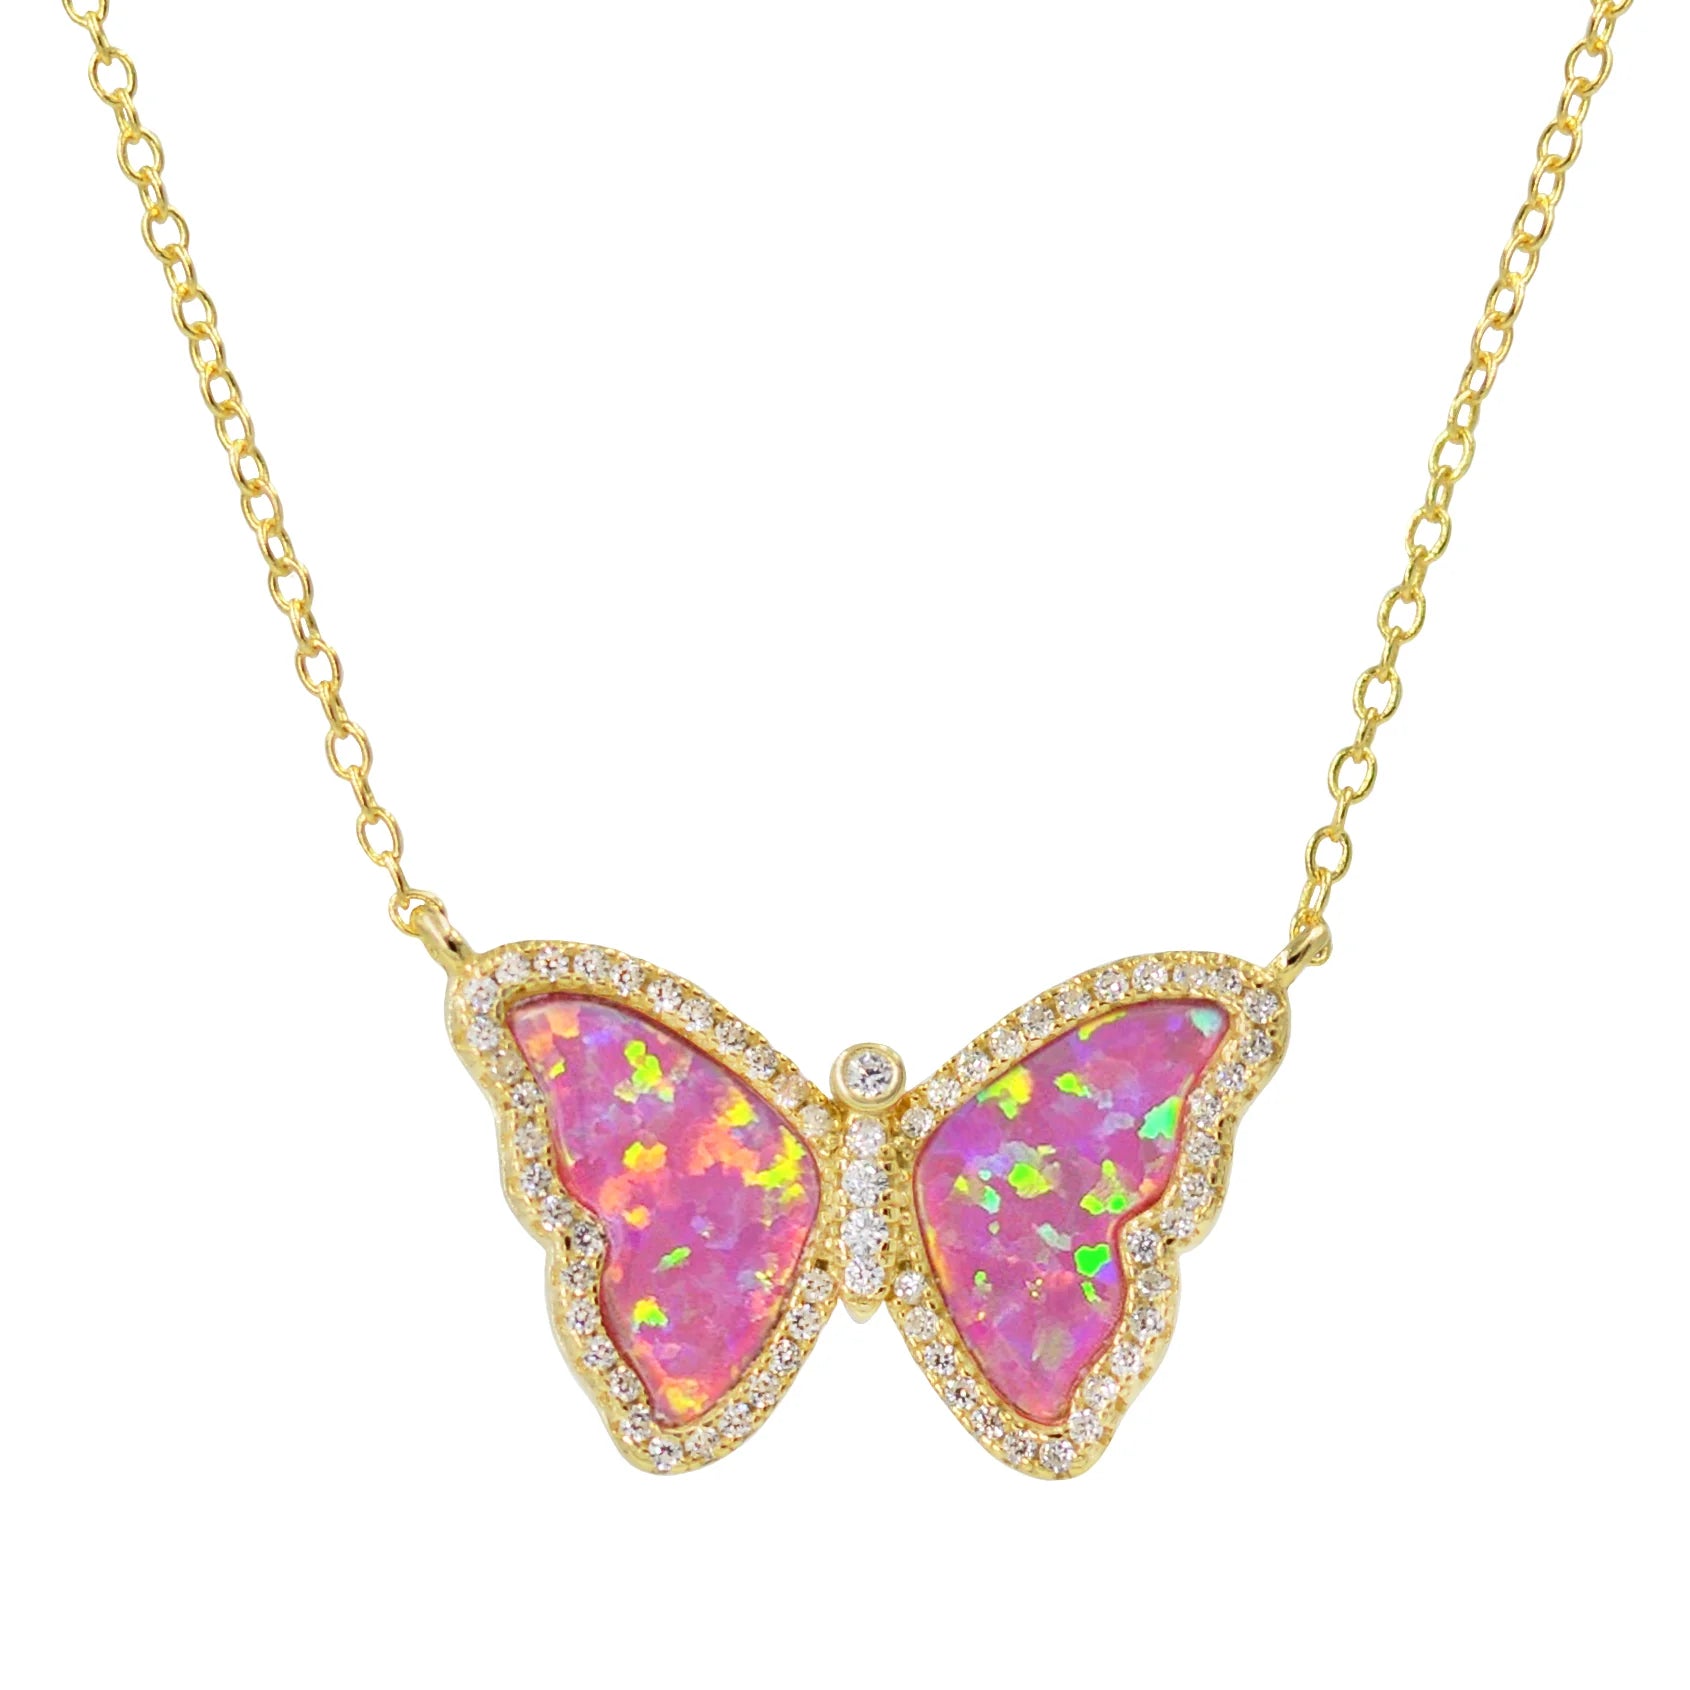 Opal butterfly necklace | Opal Gold filled jewelry | OpaLandJewelry